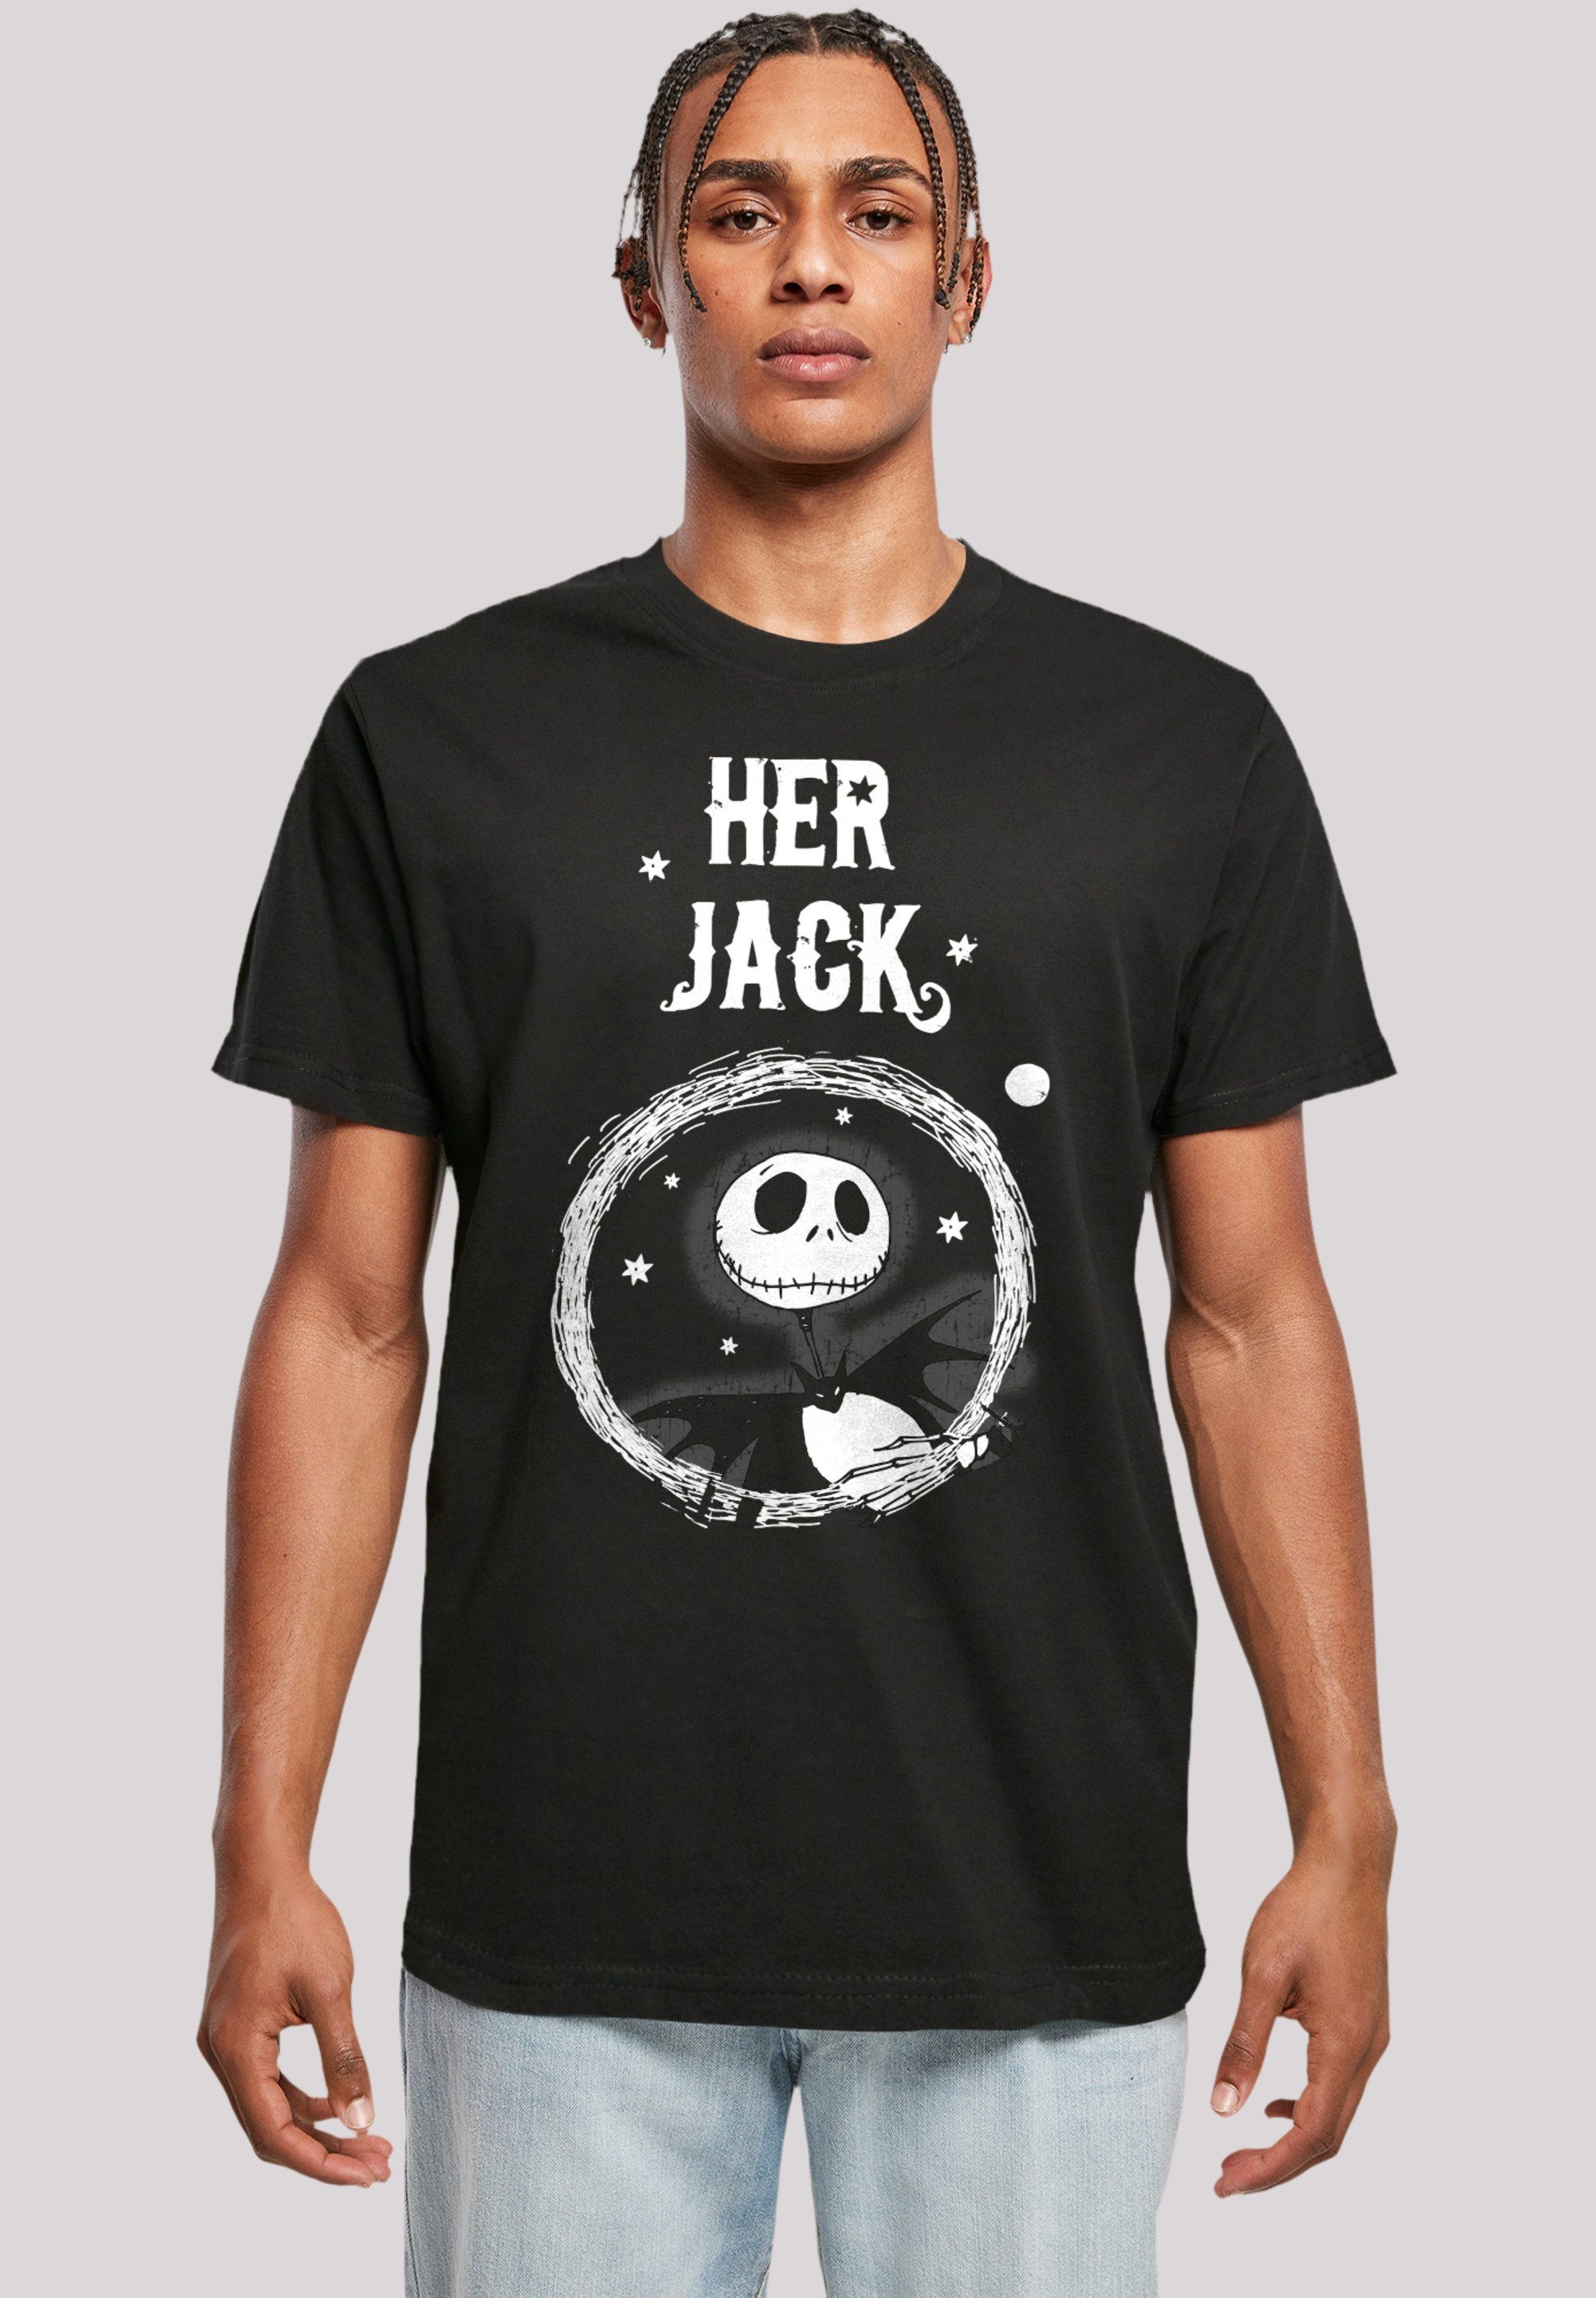 Before Disney Nightmare Baumwollstoff Premium Her hohem Qualität, Jack Tragekomfort weicher F4NT4STIC T-Shirt Christmas Sehr mit